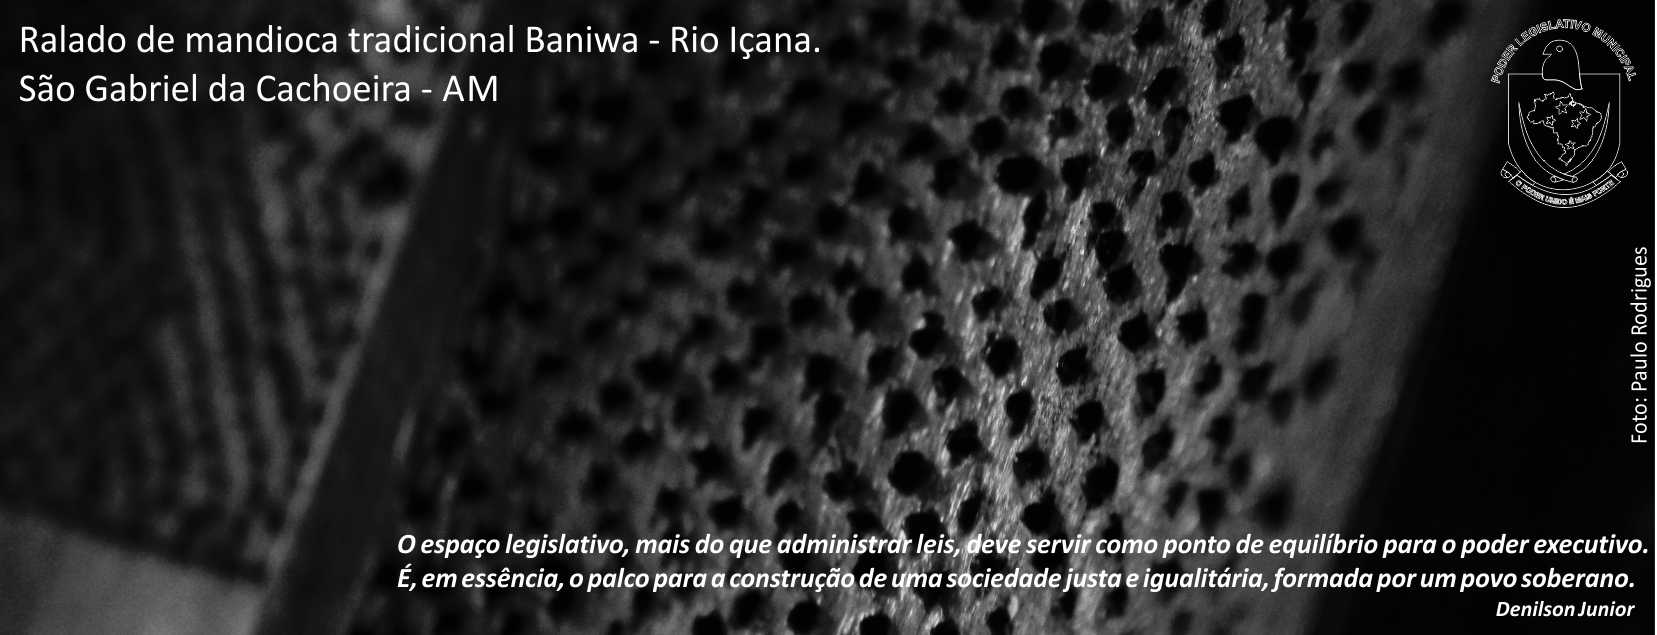 Barra Fan Page Camara Municipal -Ralado Baniwa.jpg